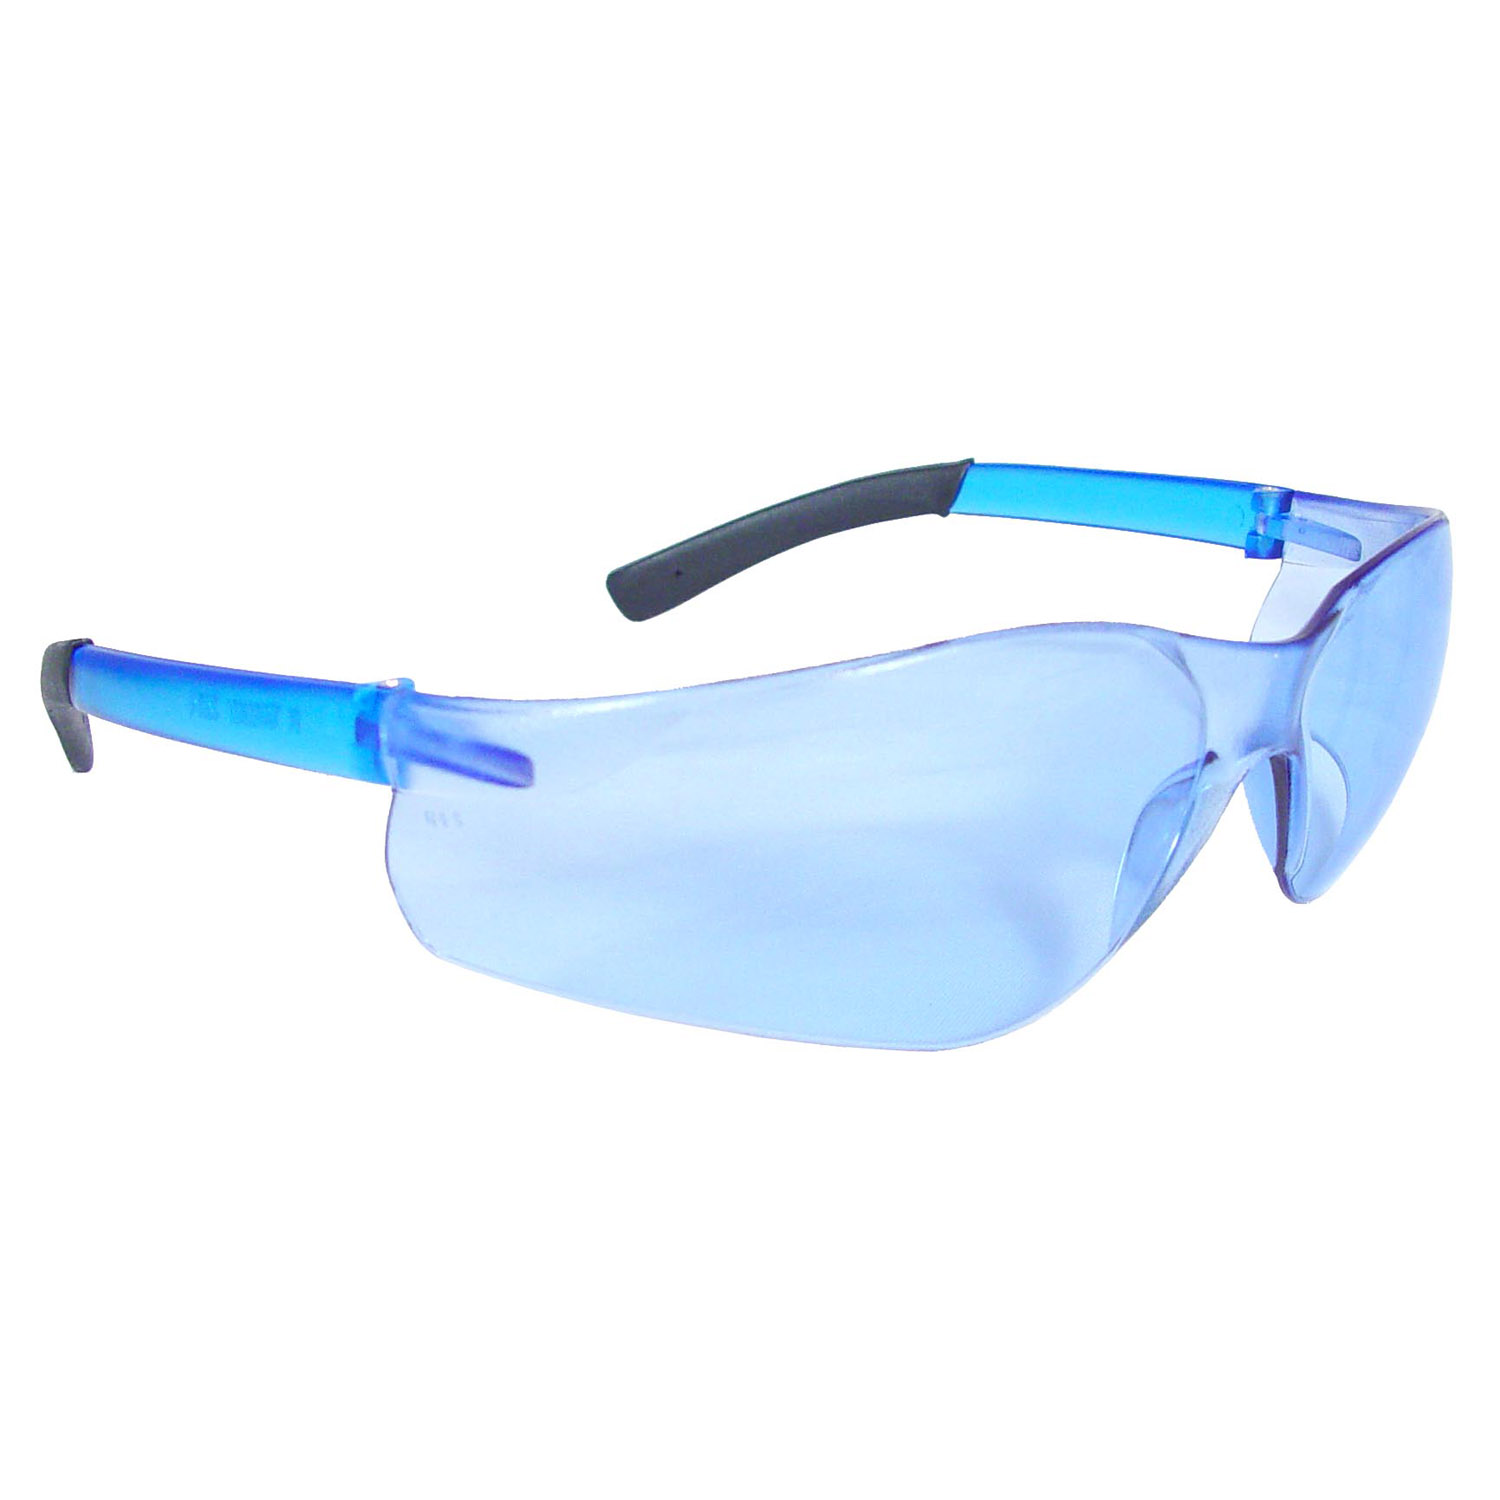 Rad-Atac™ Safety Eyewear - Light Blue Frame - Light Blue Lens - Tinted Lens